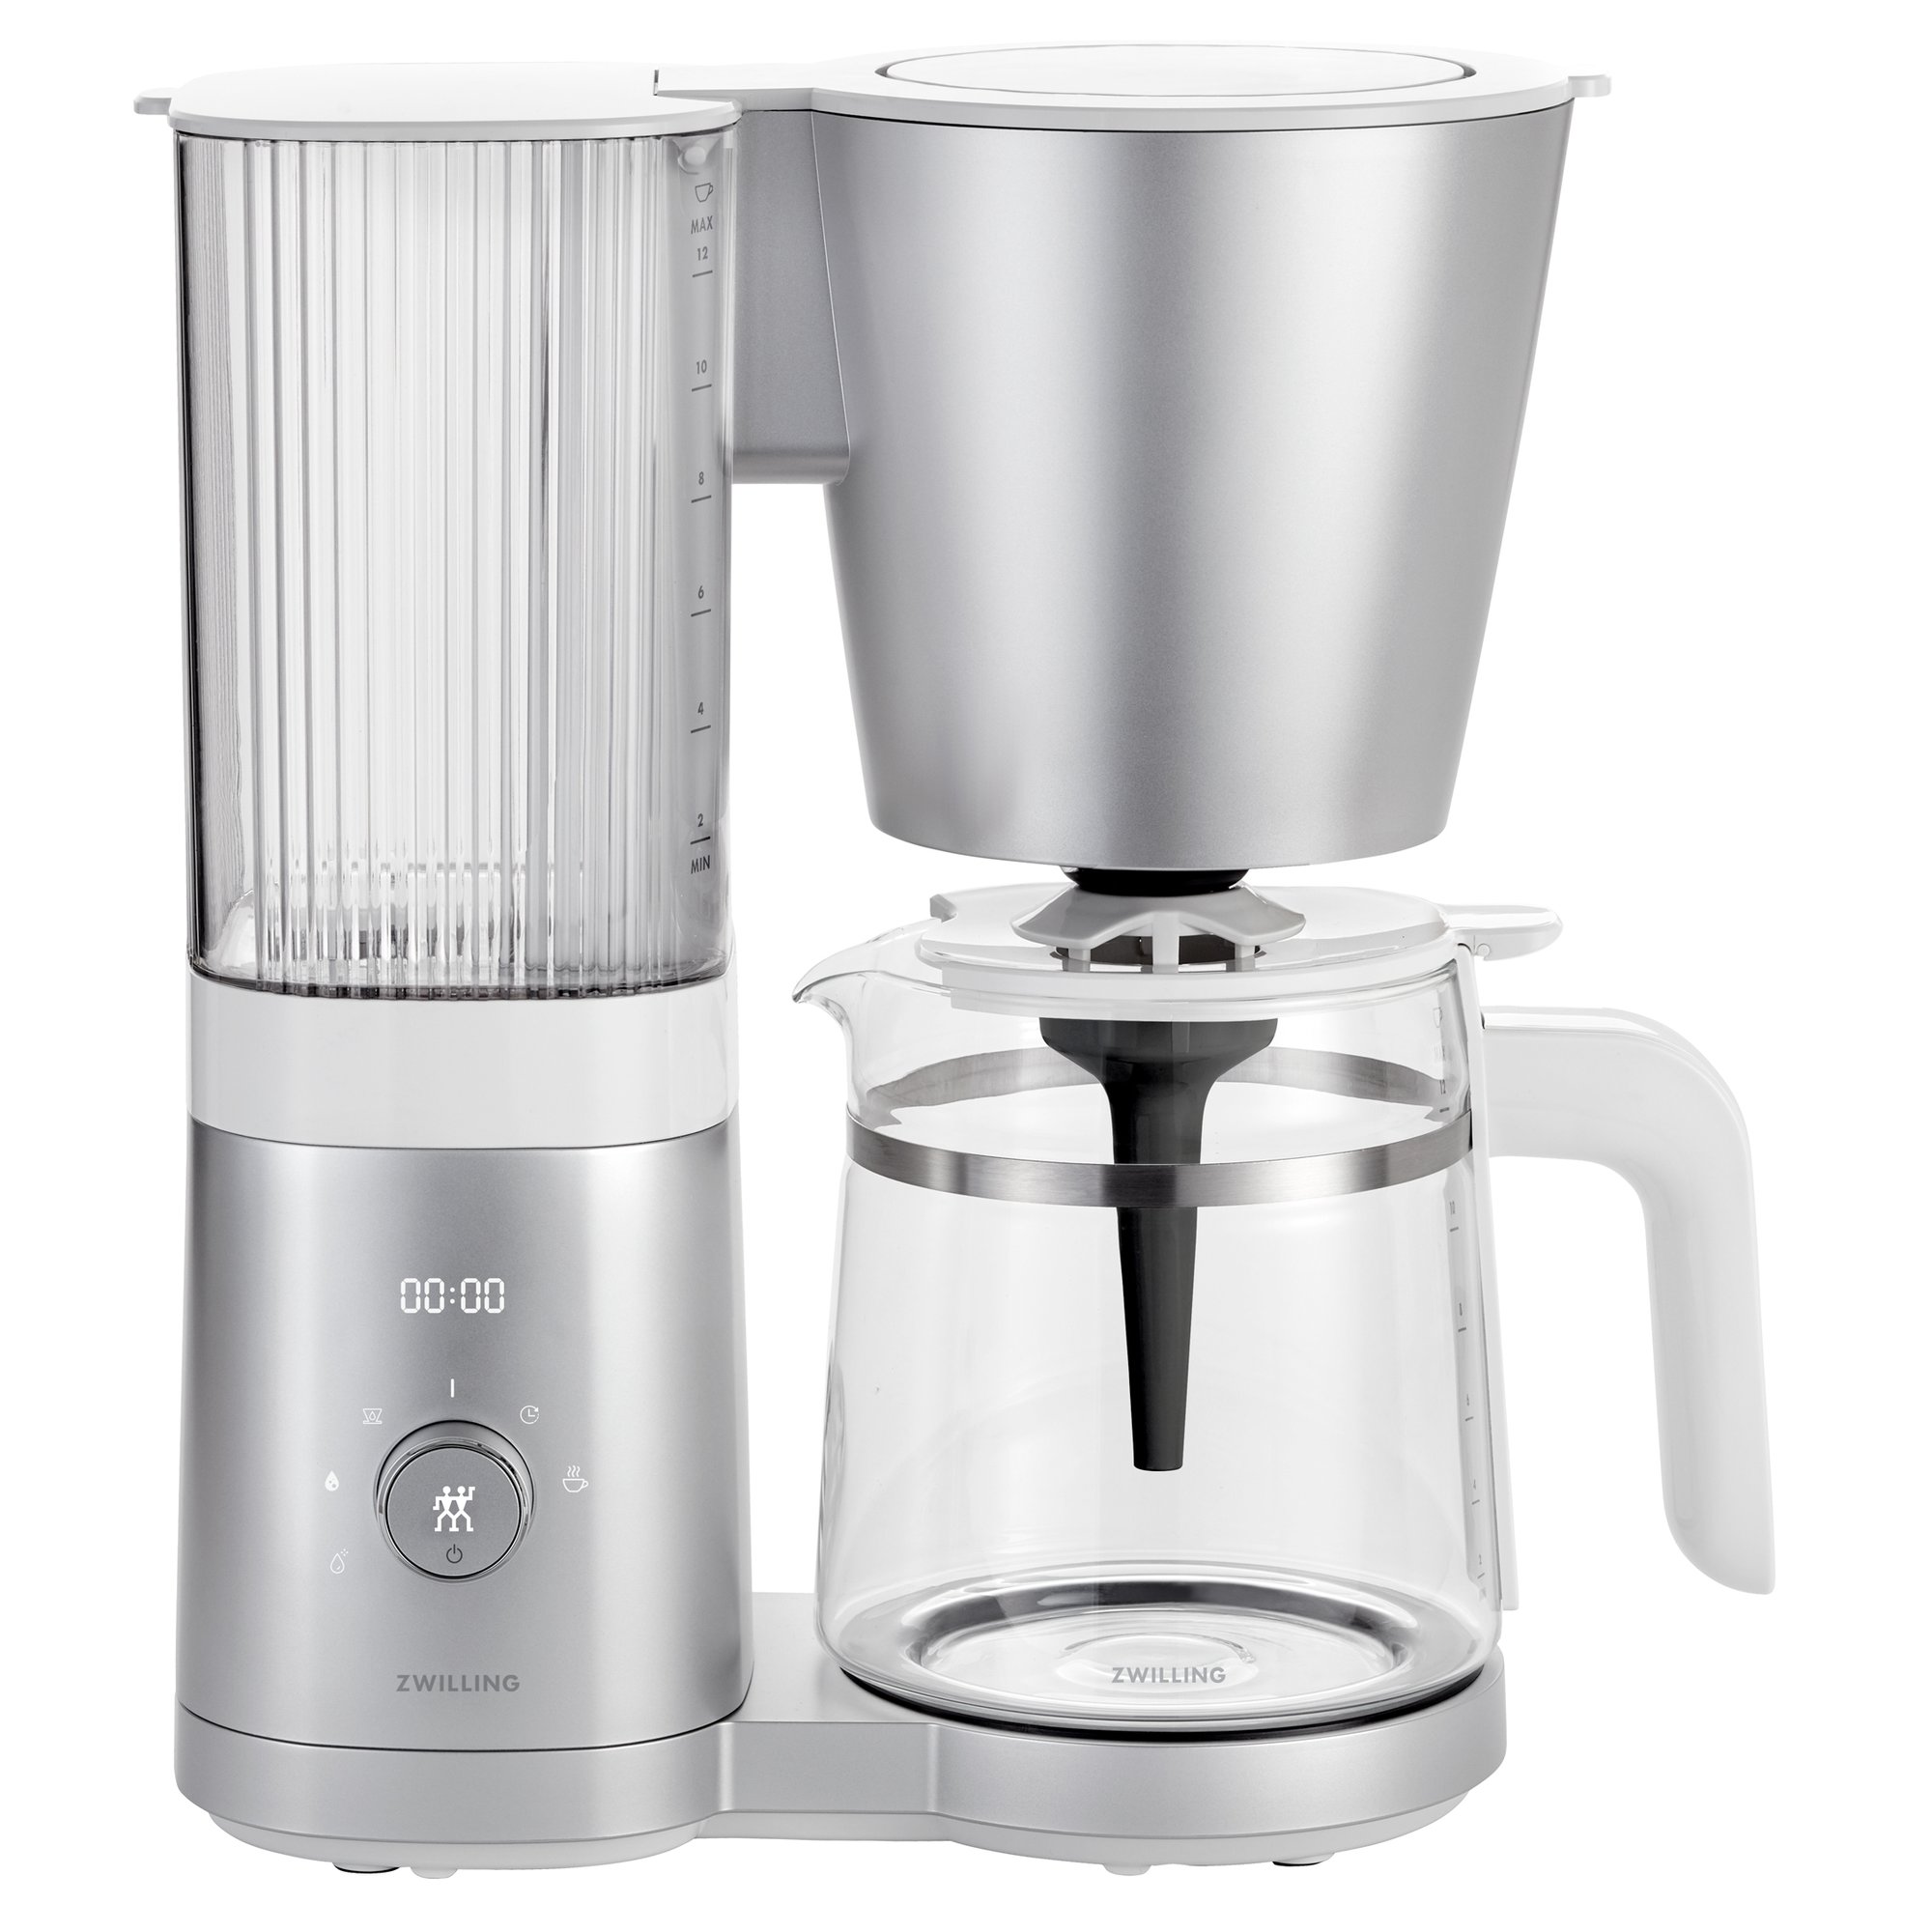 4: Zwilling Enfinigy kaffemaskine, 1,5 liter, sølv & hvid